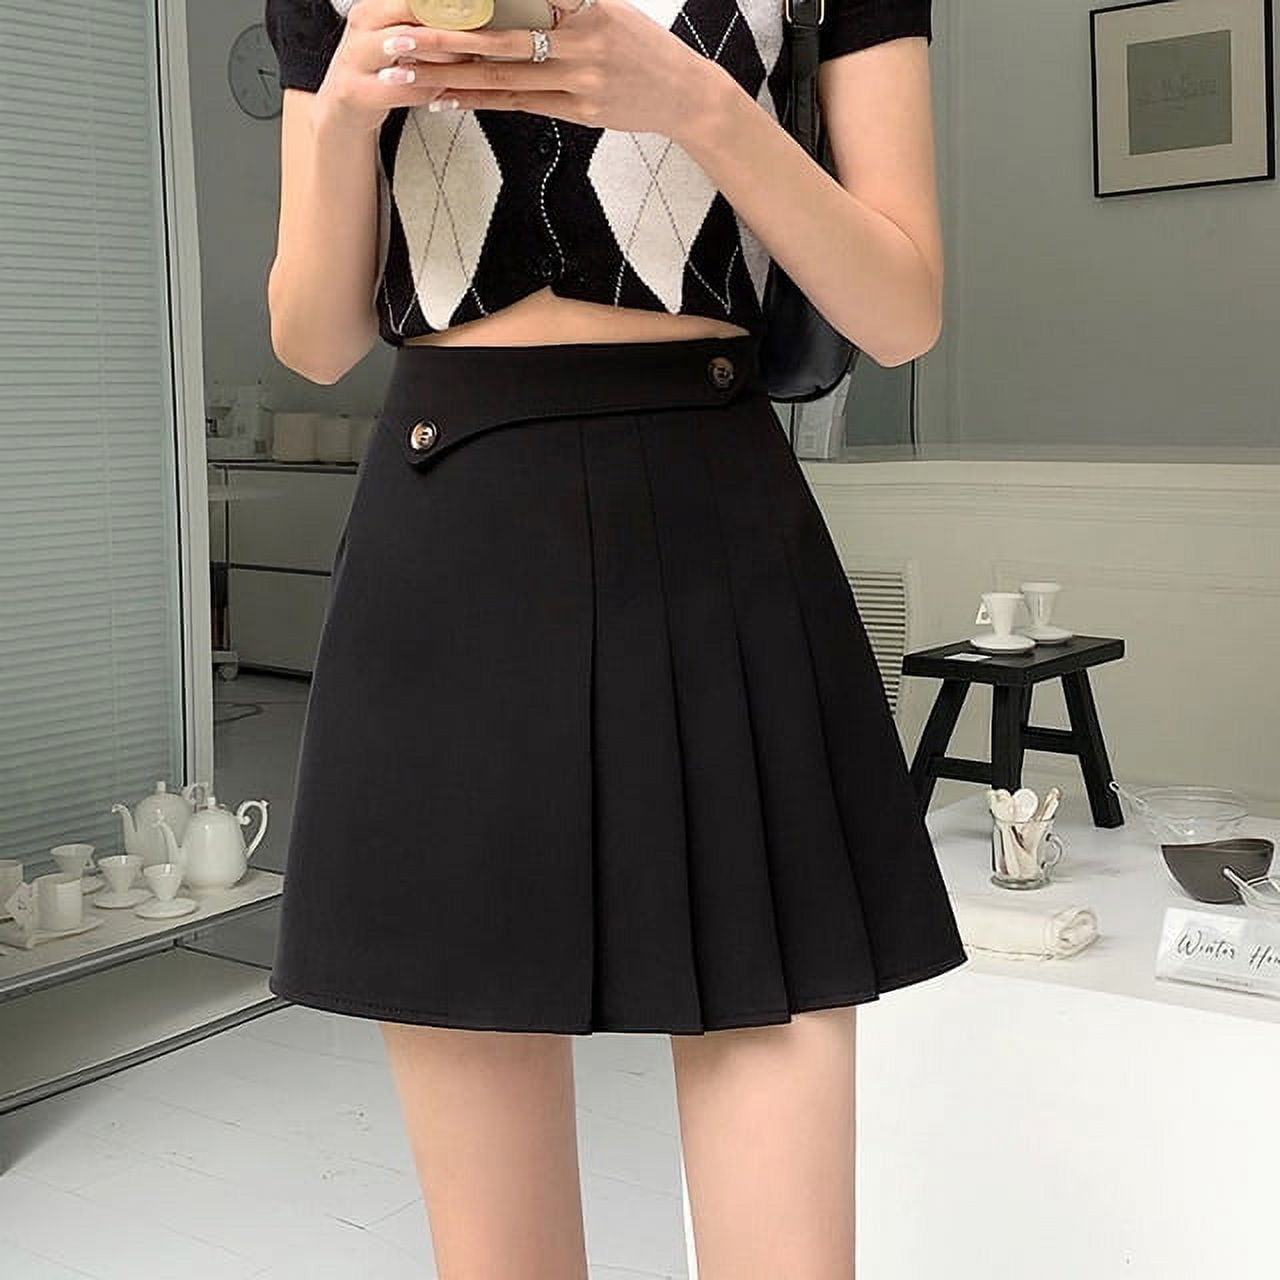 Korean fashion, Skirt leggings, Korean fashion skirt